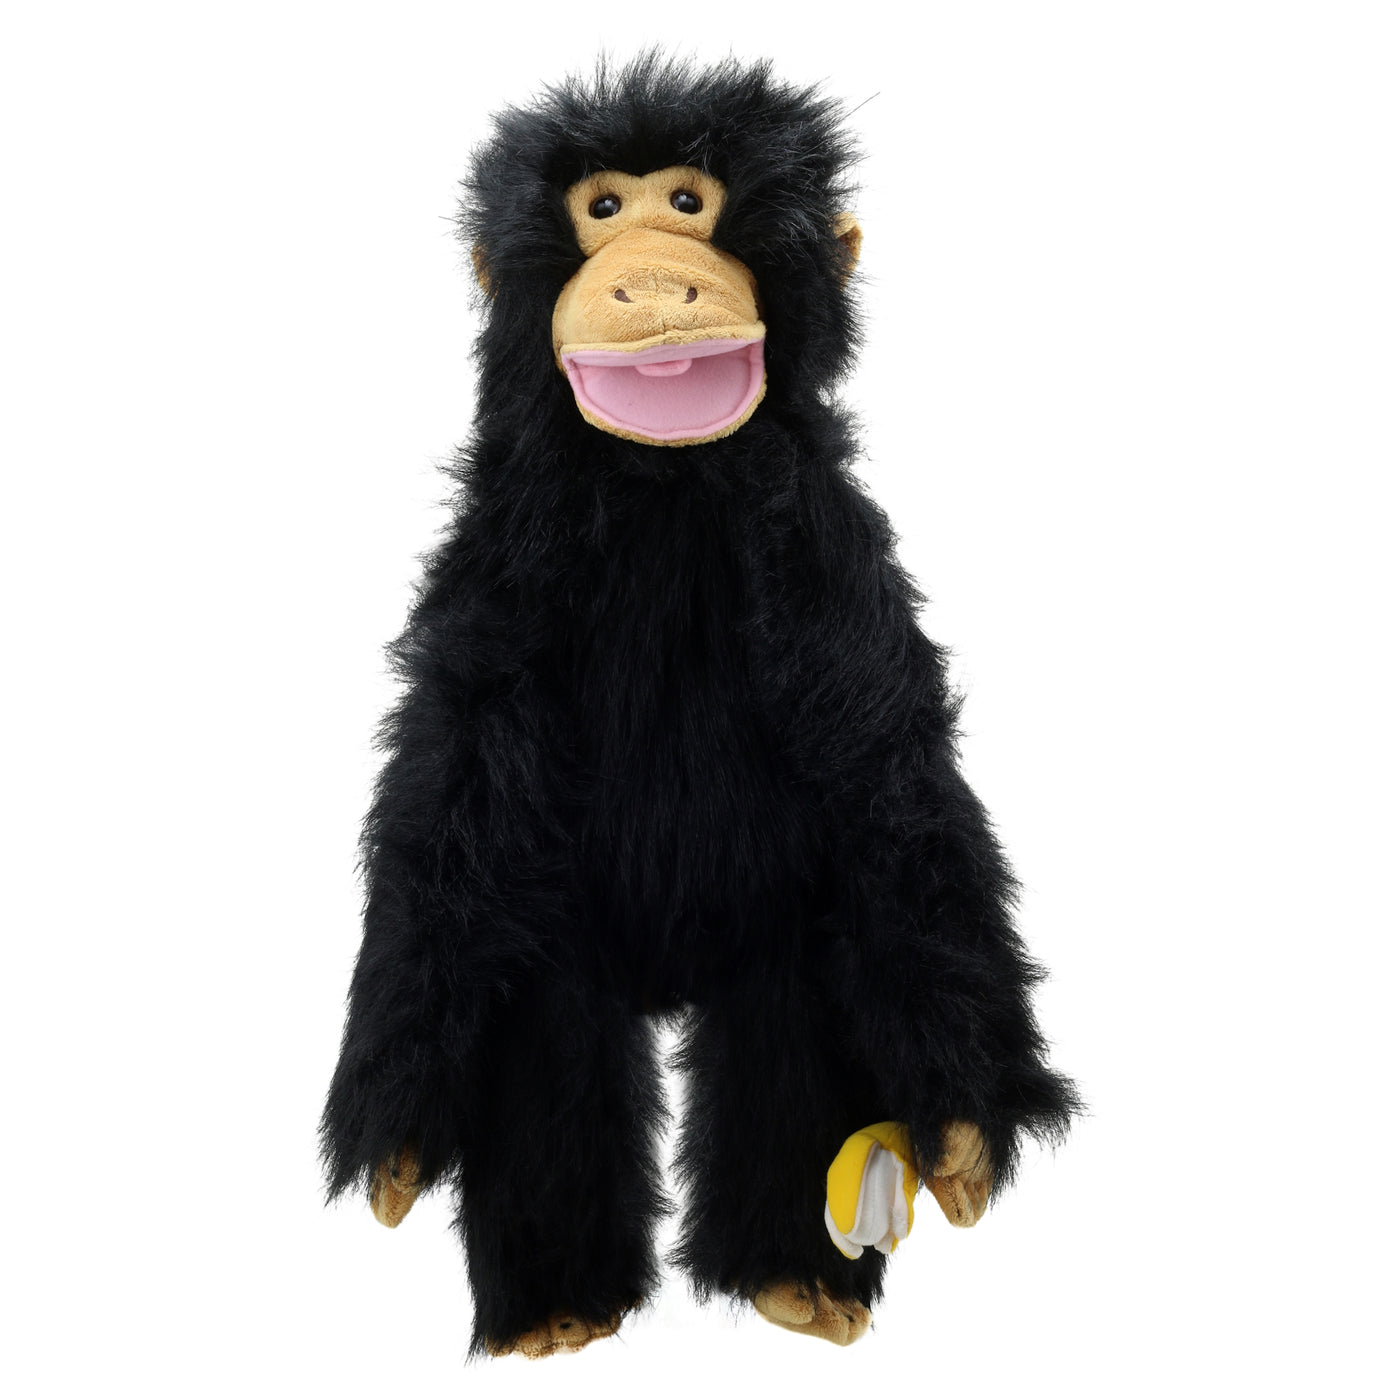 Primates Puppet - Chimp